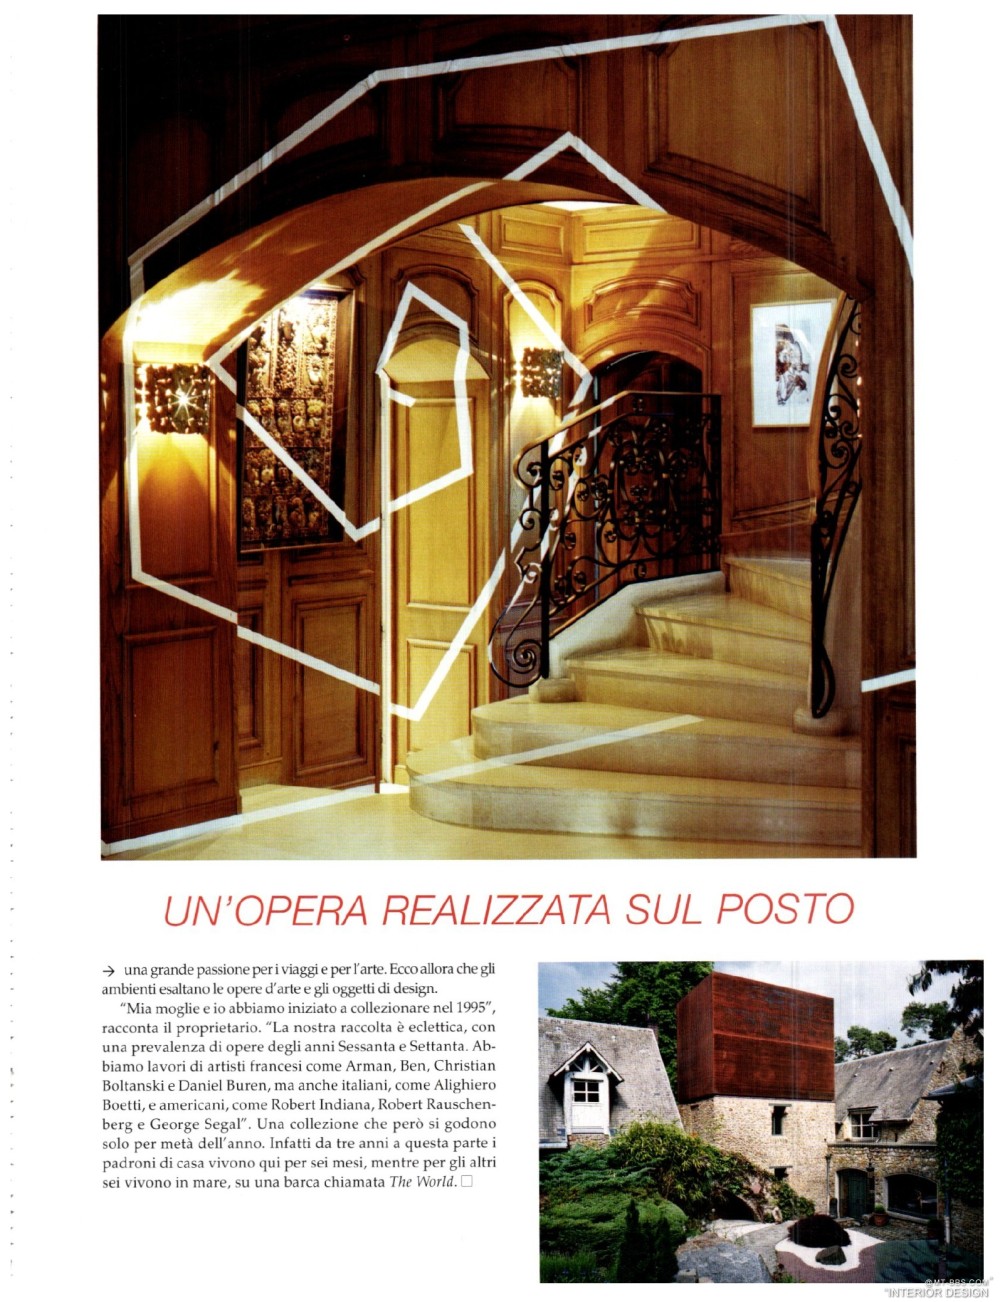 意大利AD 杂志 2012年全年JPG高清版本 全免（上传完毕）_0111.jpg